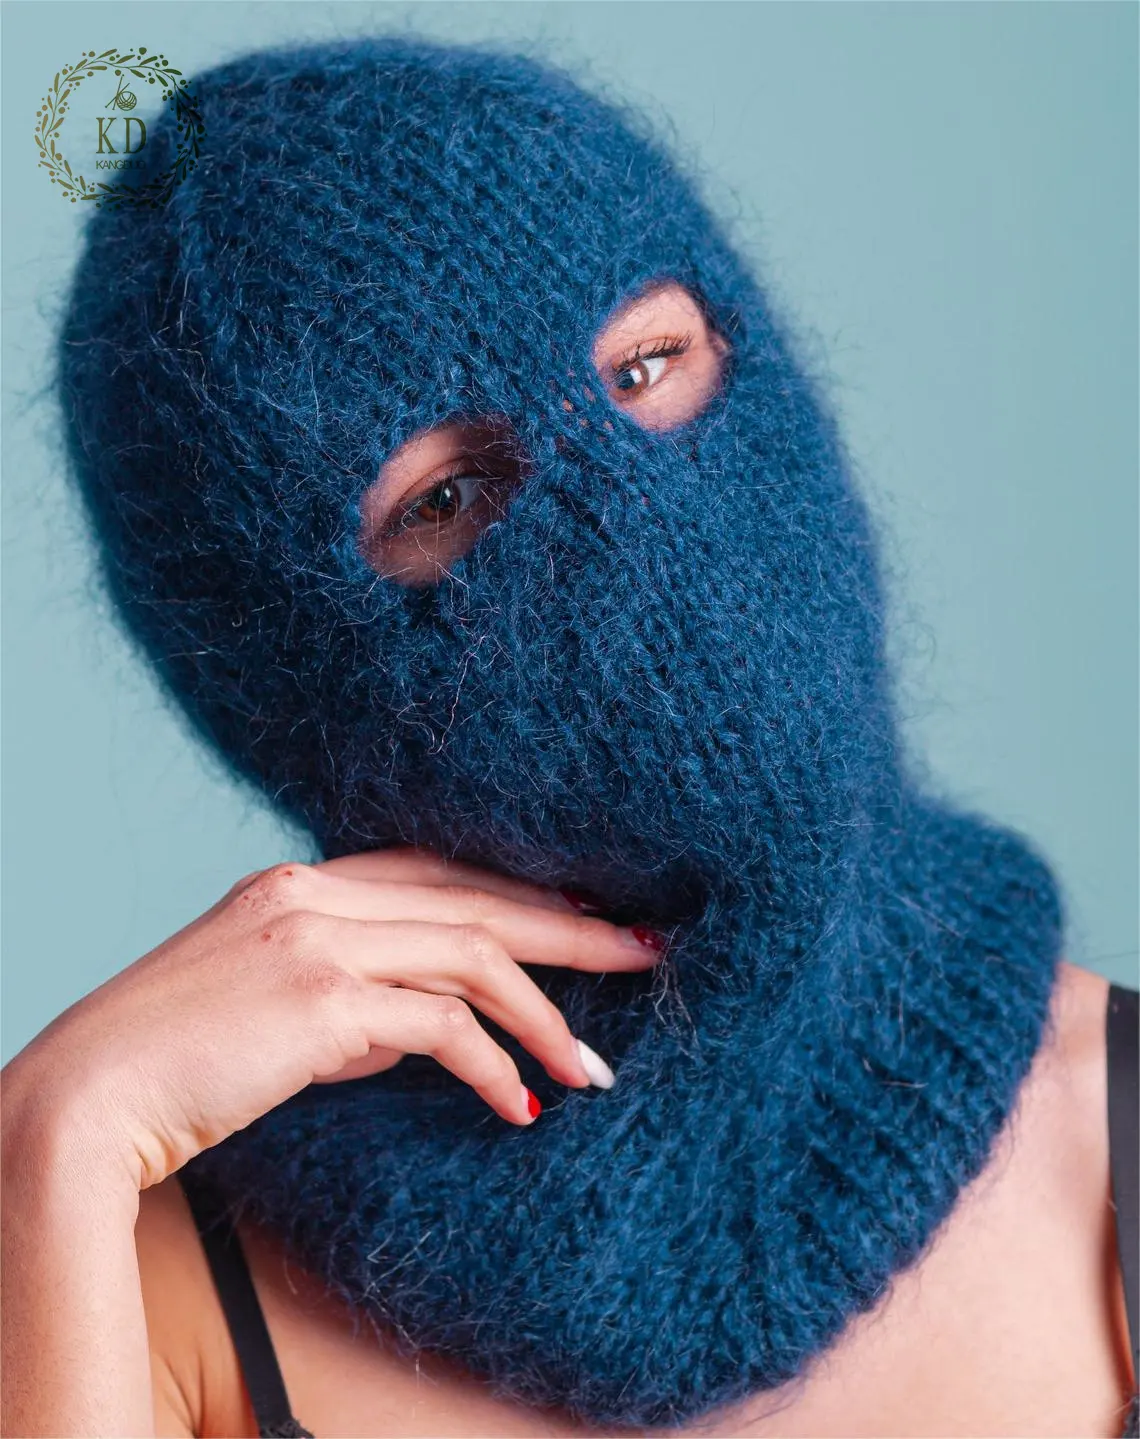 KD – masque de Ski en tricot personnalisé, bonnet de cagoule en Mohair bleu